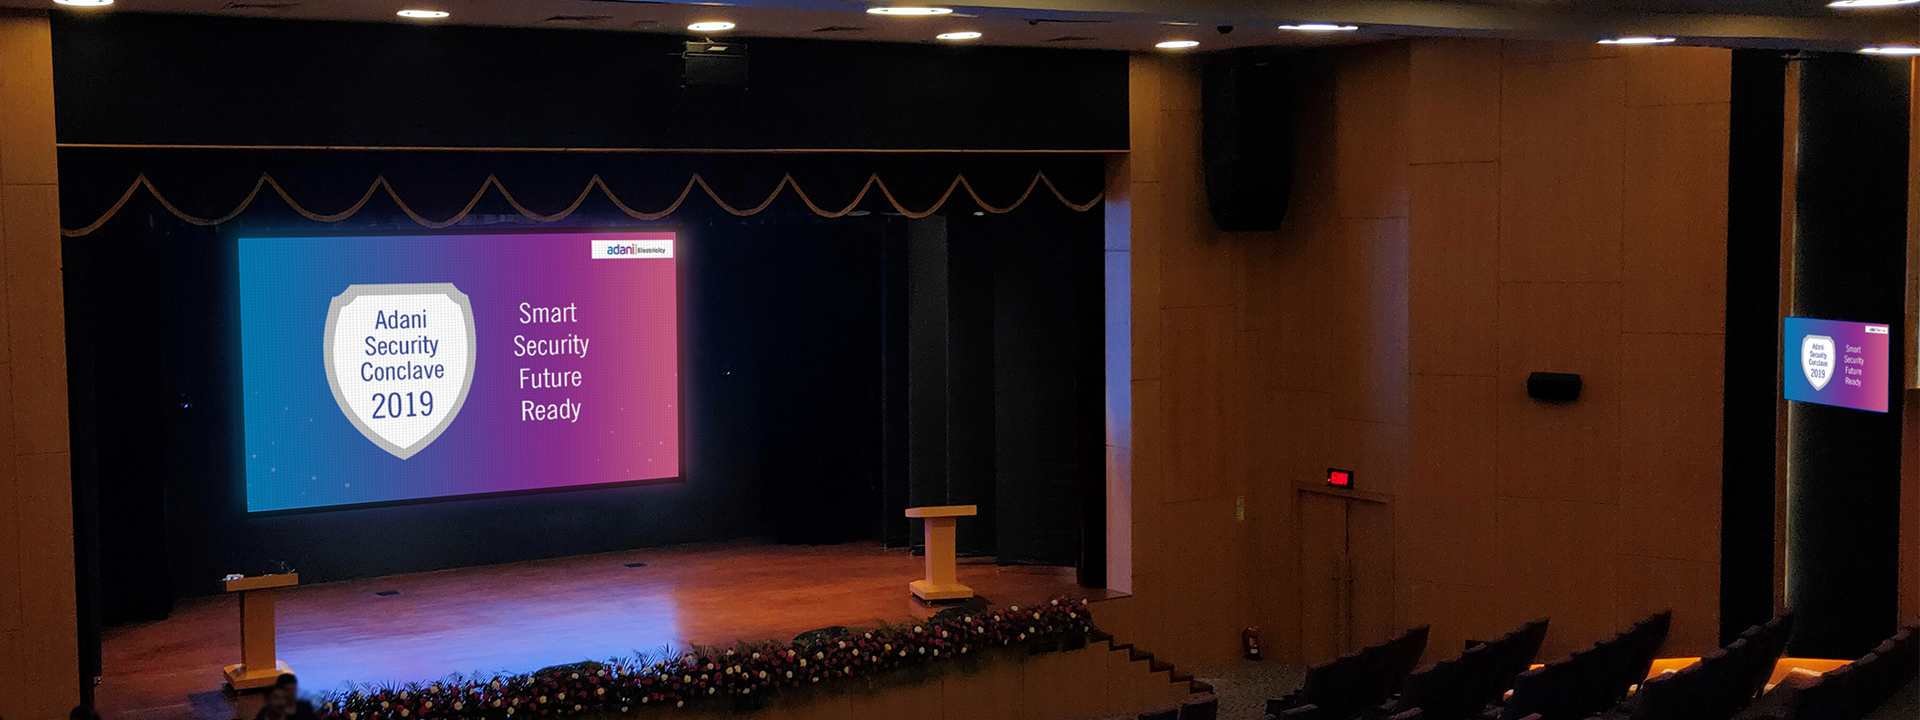 Auditorium LED screen for Adani